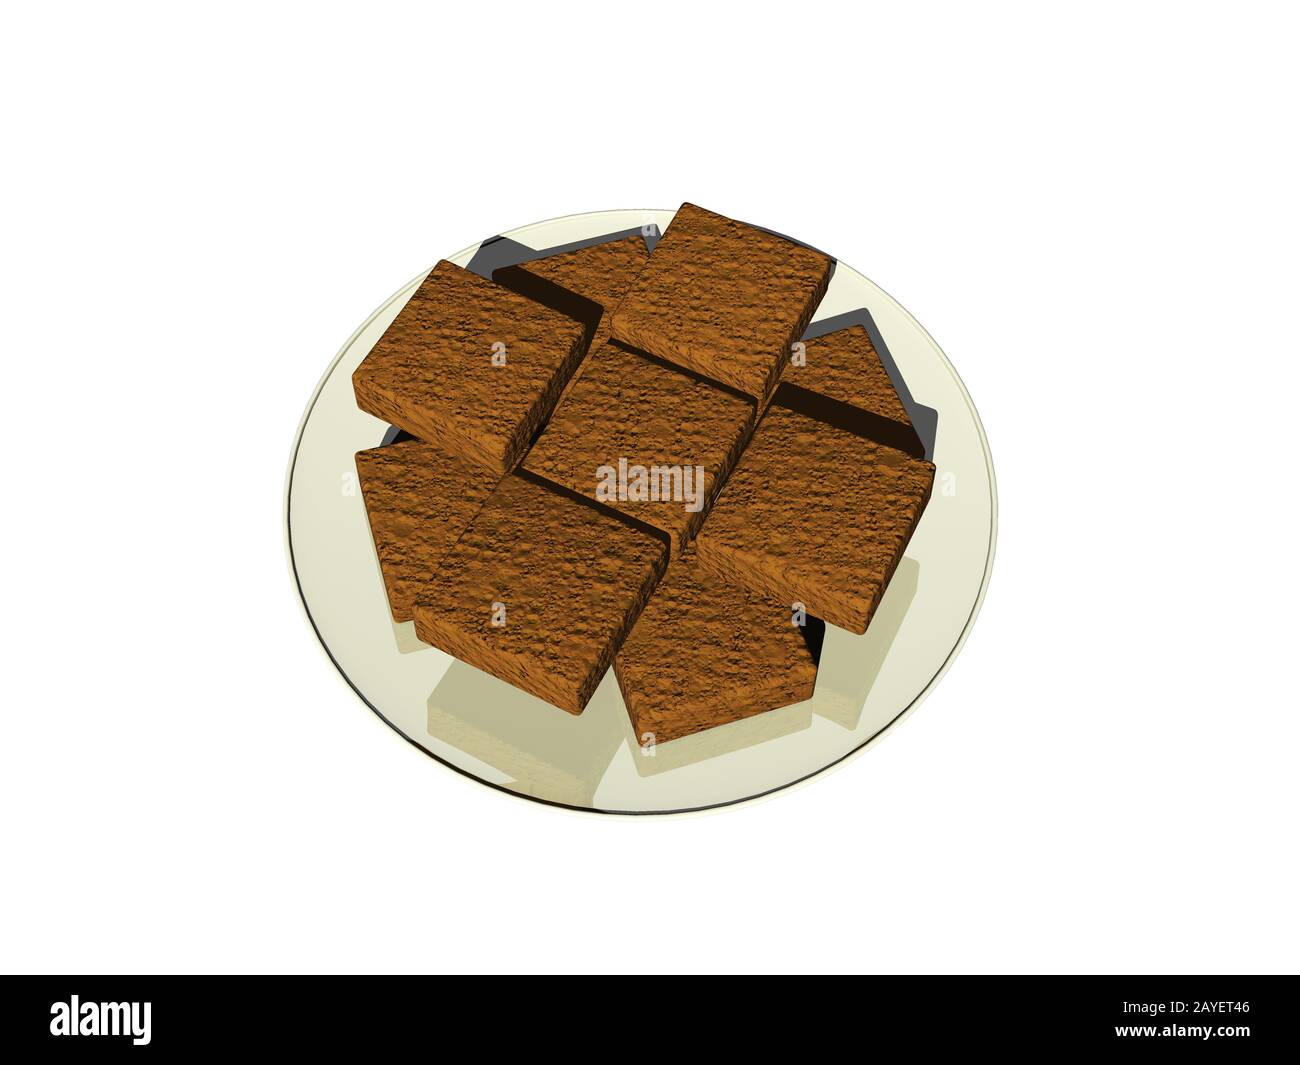 Chocolate cake as square pieces Stock Photo